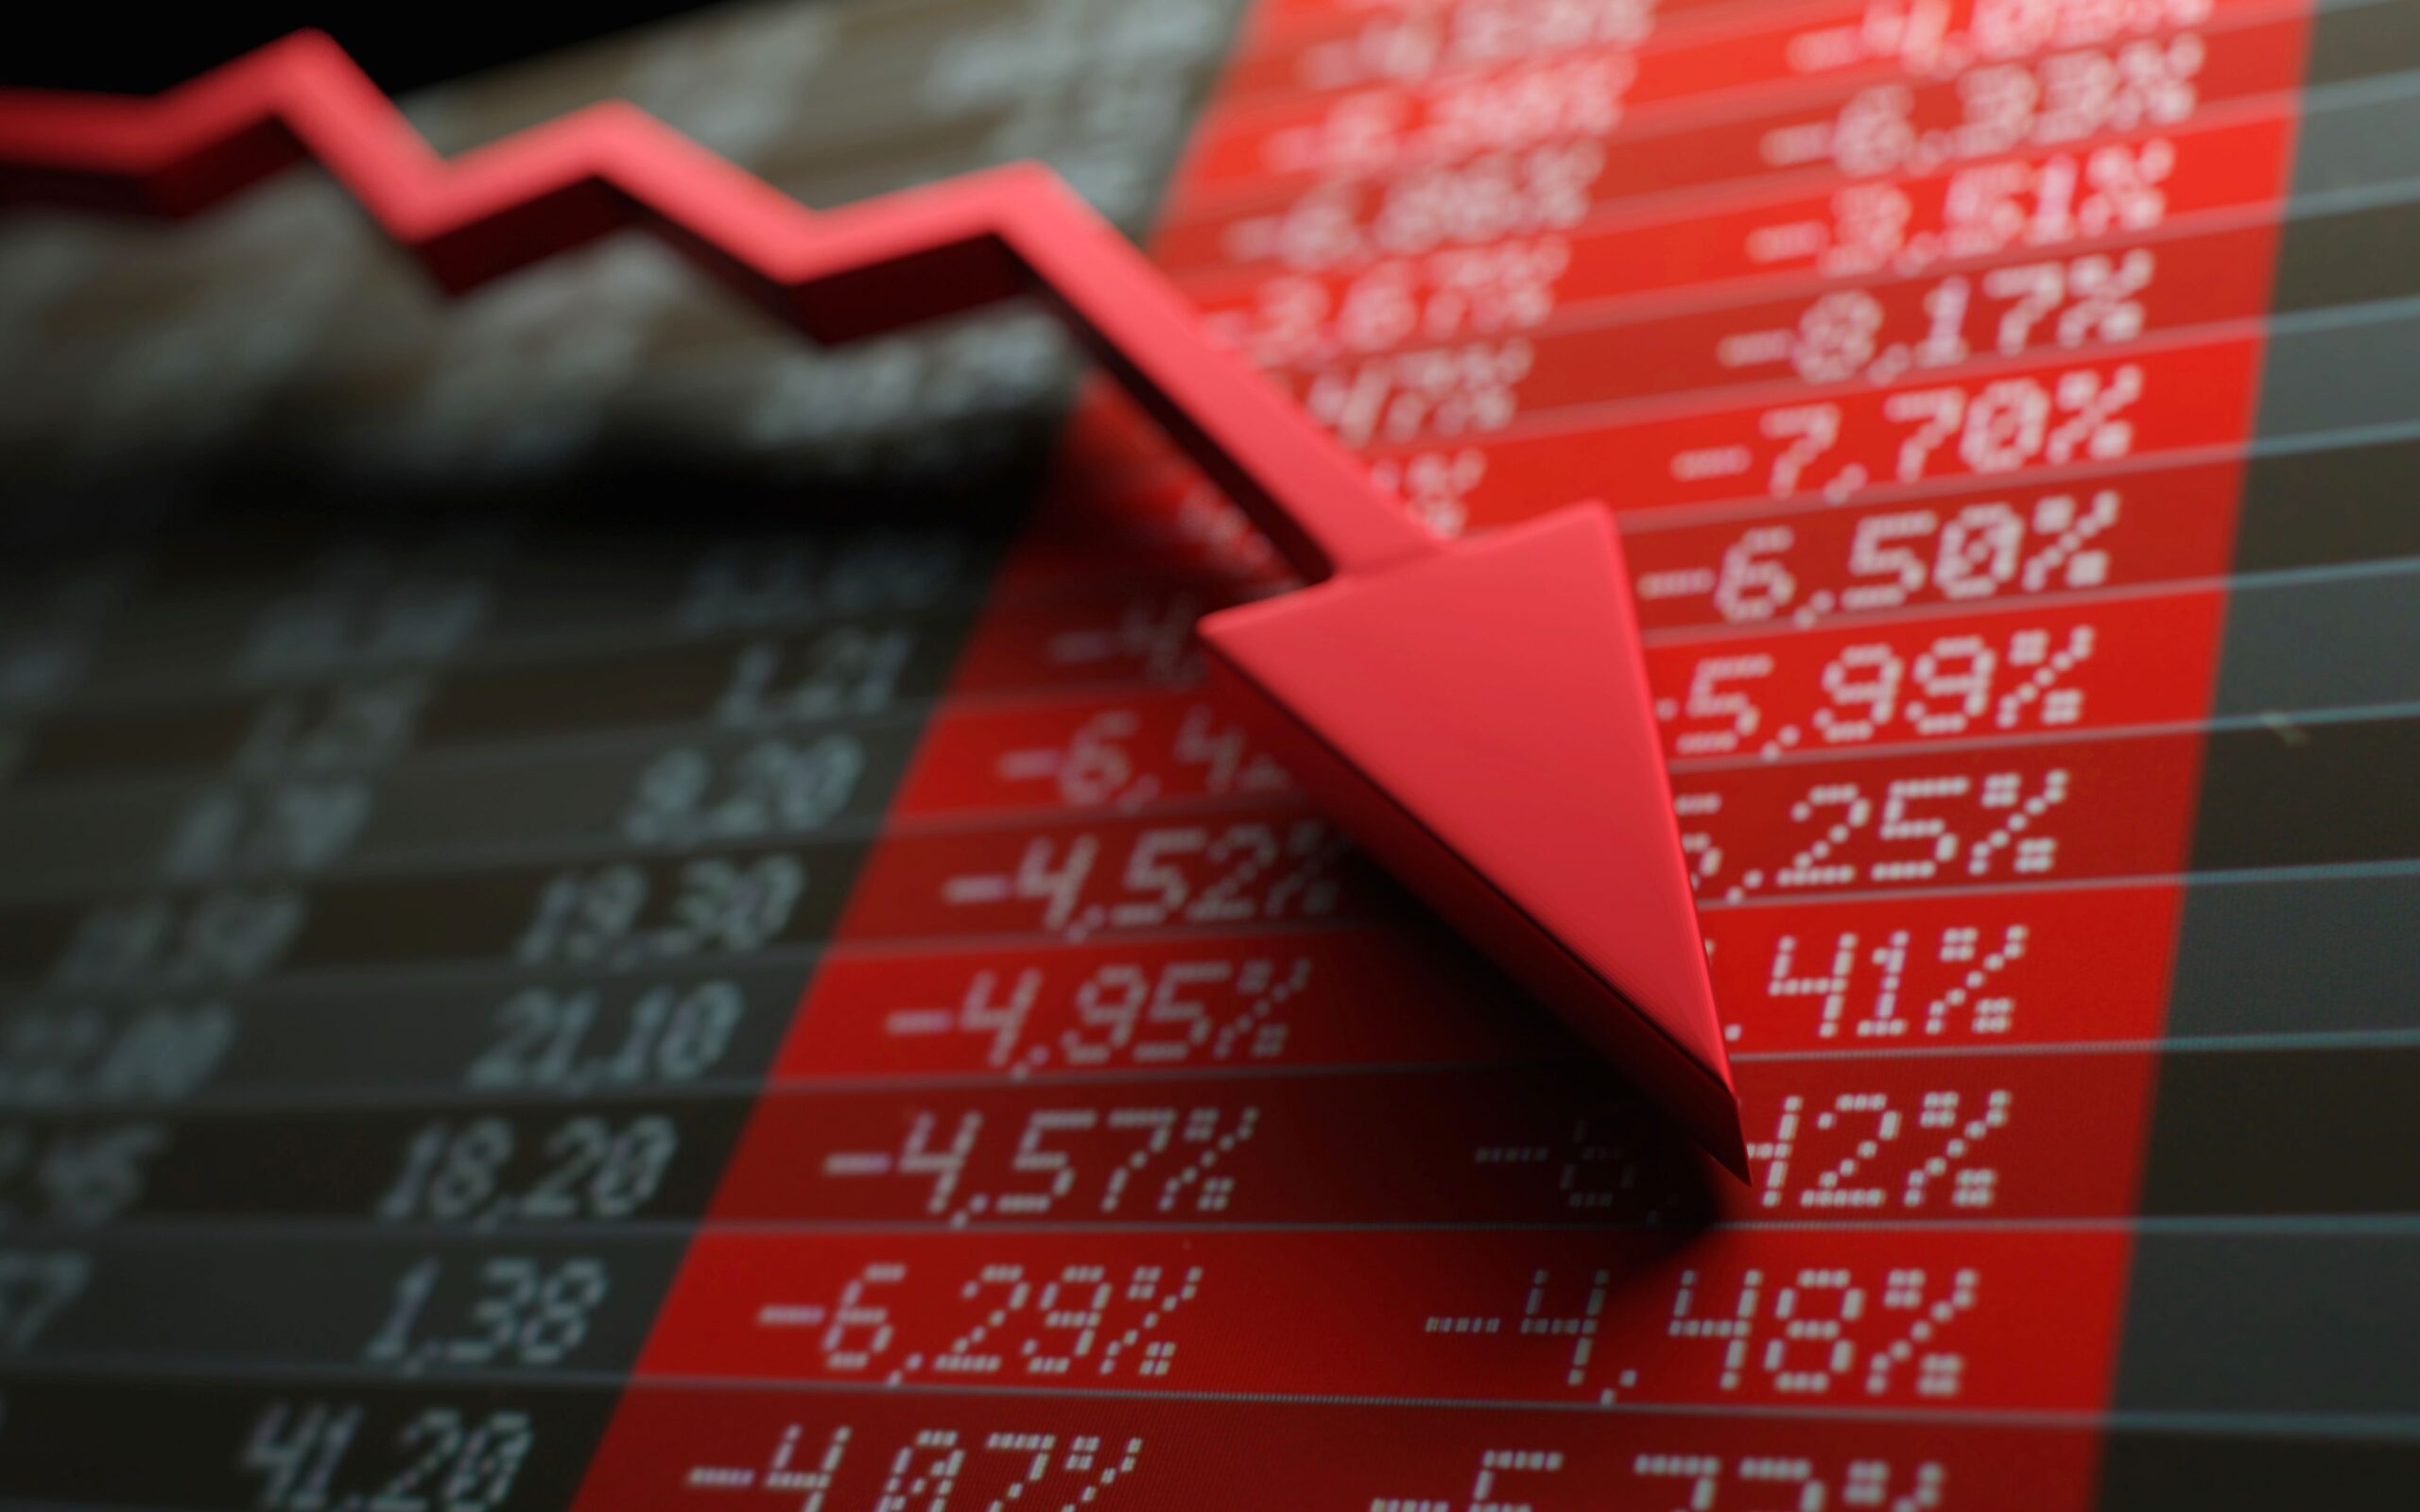 Claim Losses on Devalued Stock